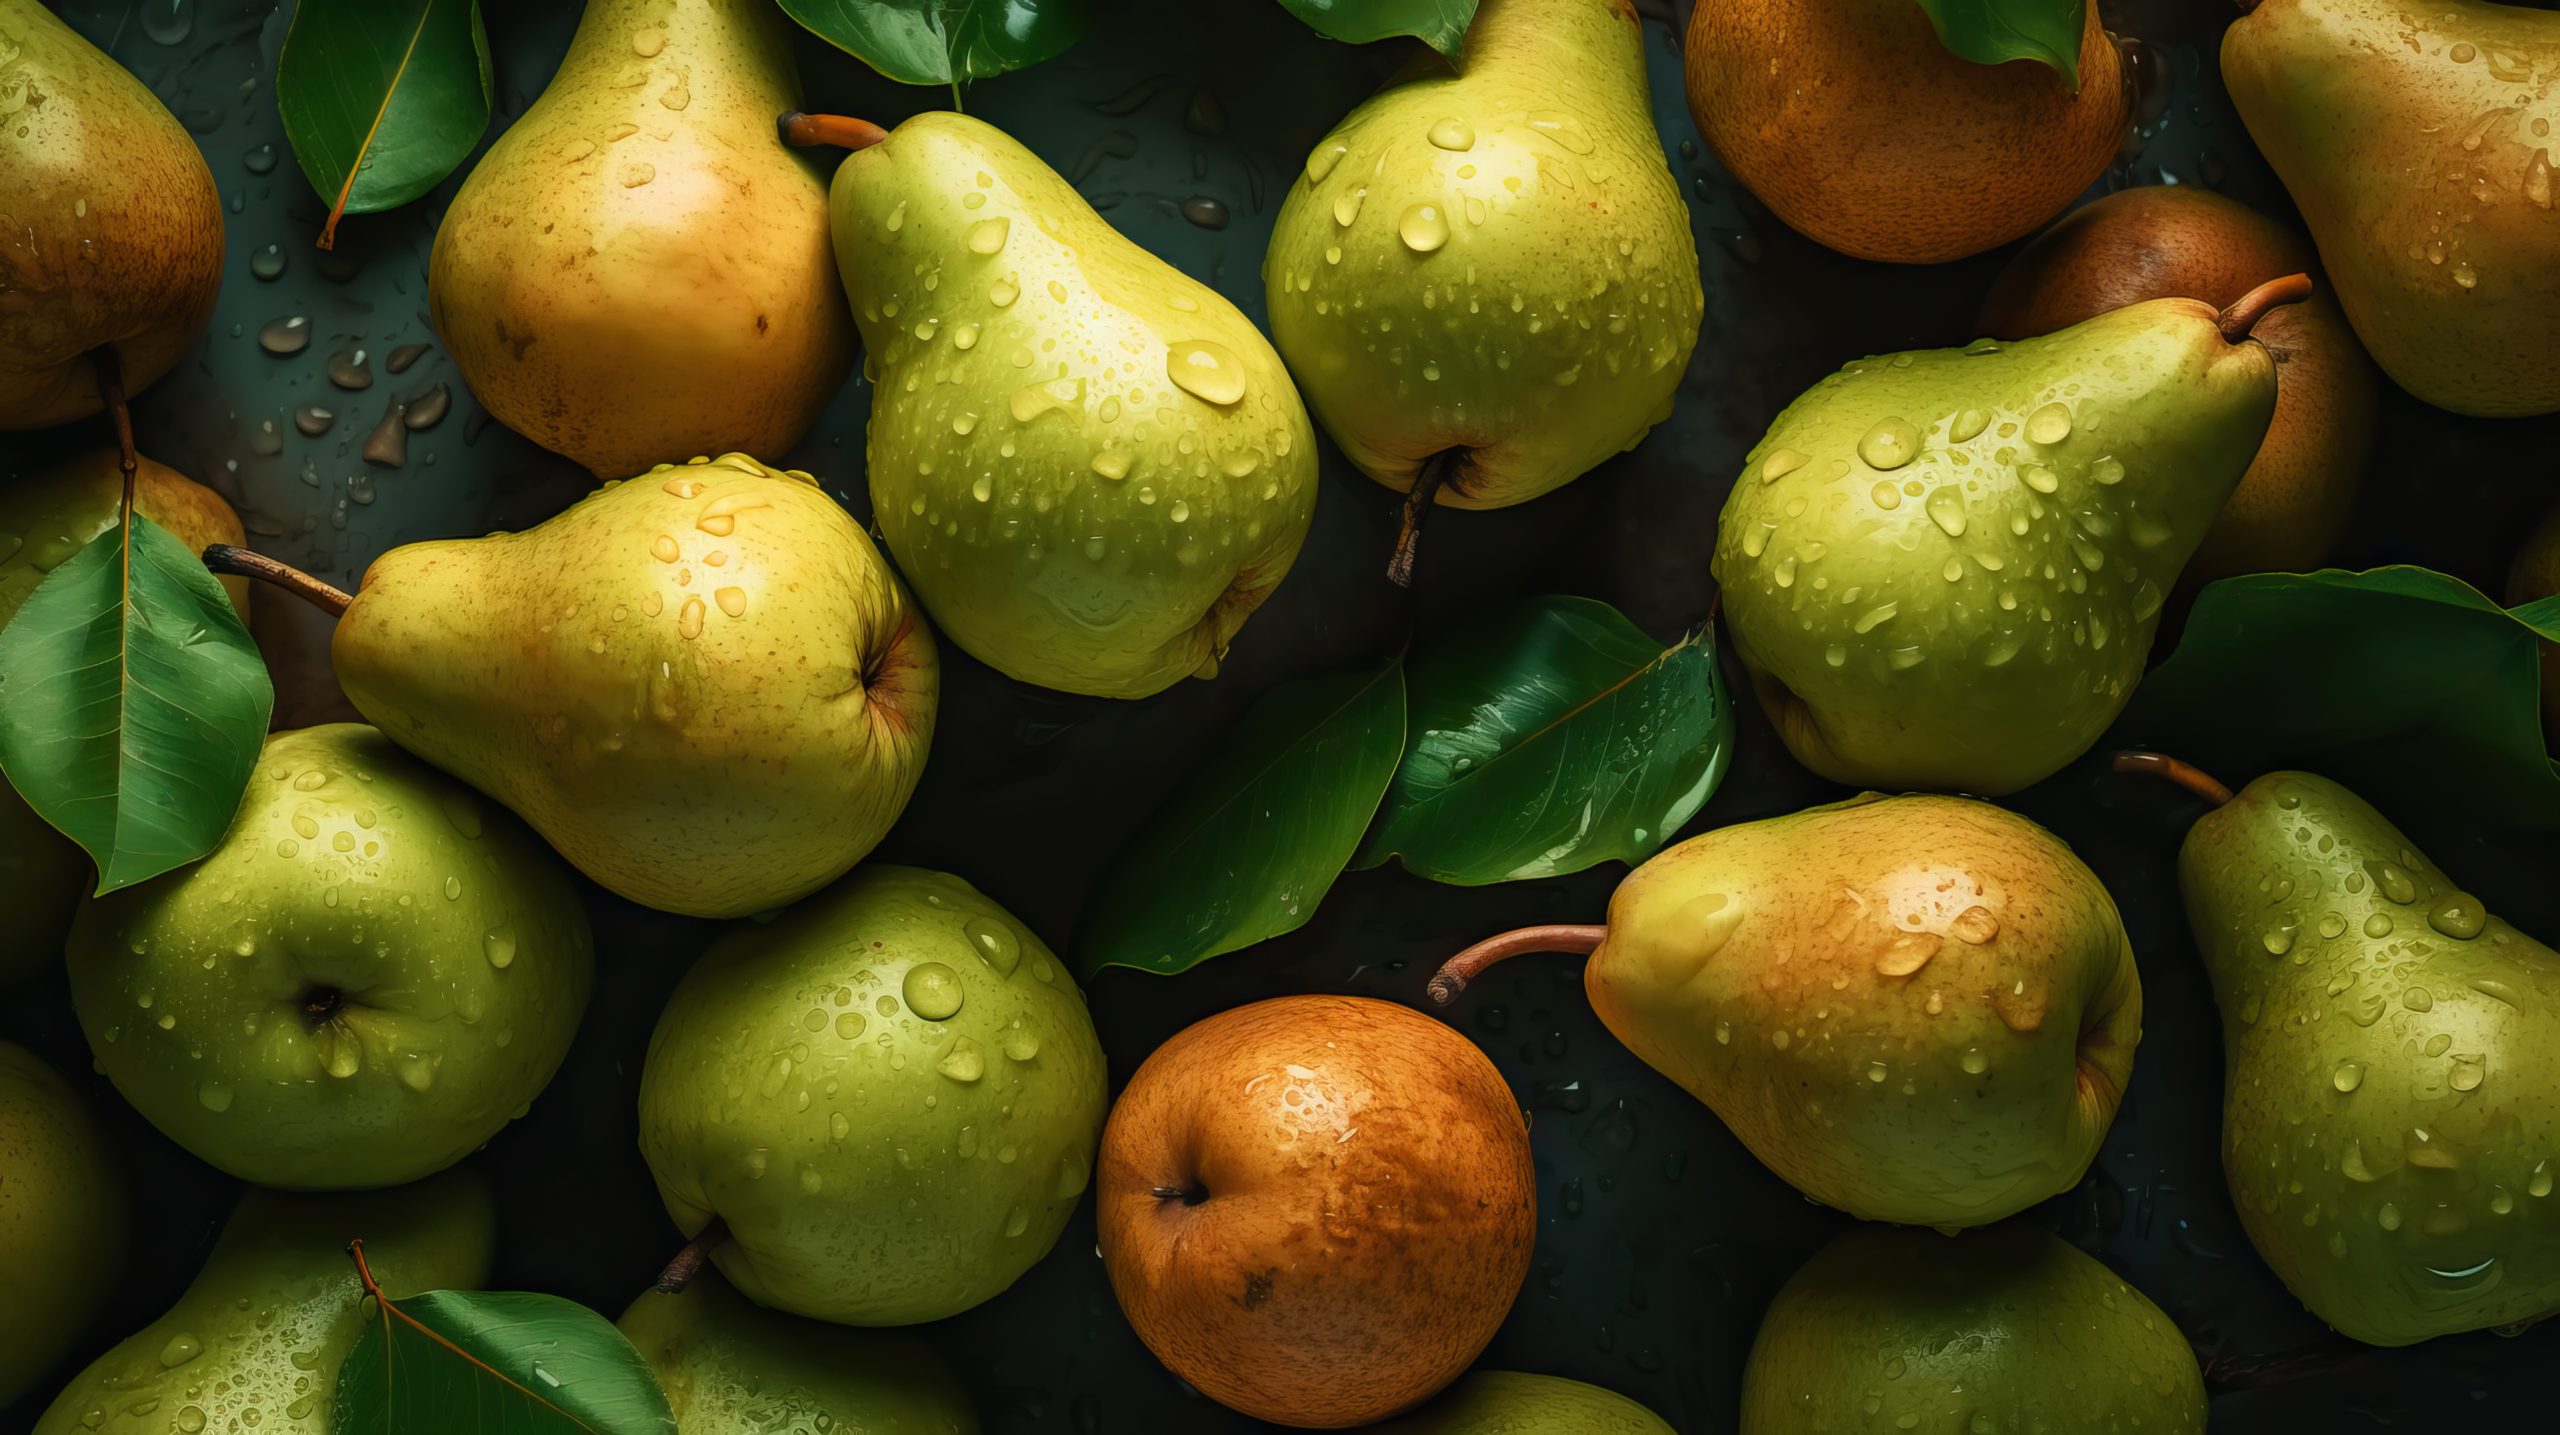 La poire, un fruit à la saveur douce et extraordinaires propriétés nutritionnelles